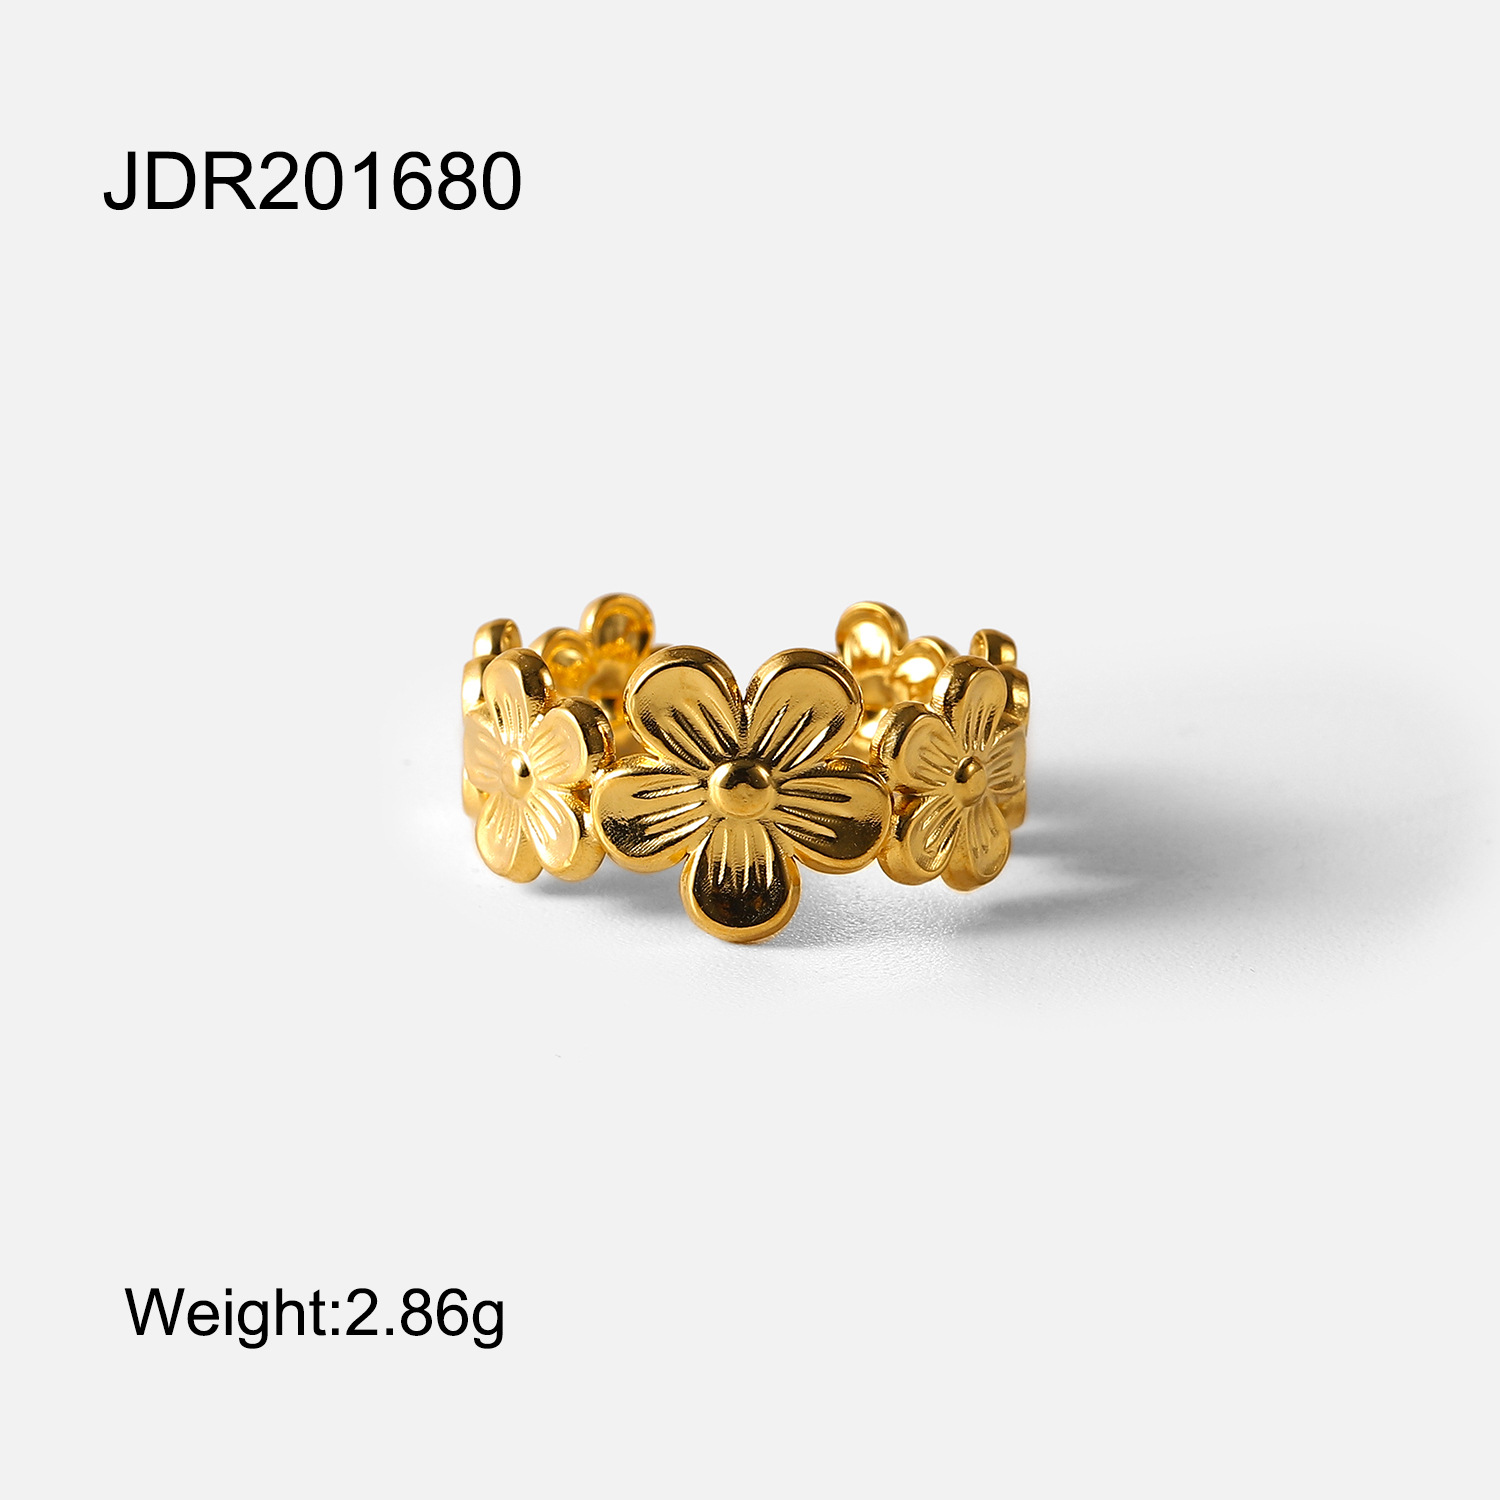 JDR201680